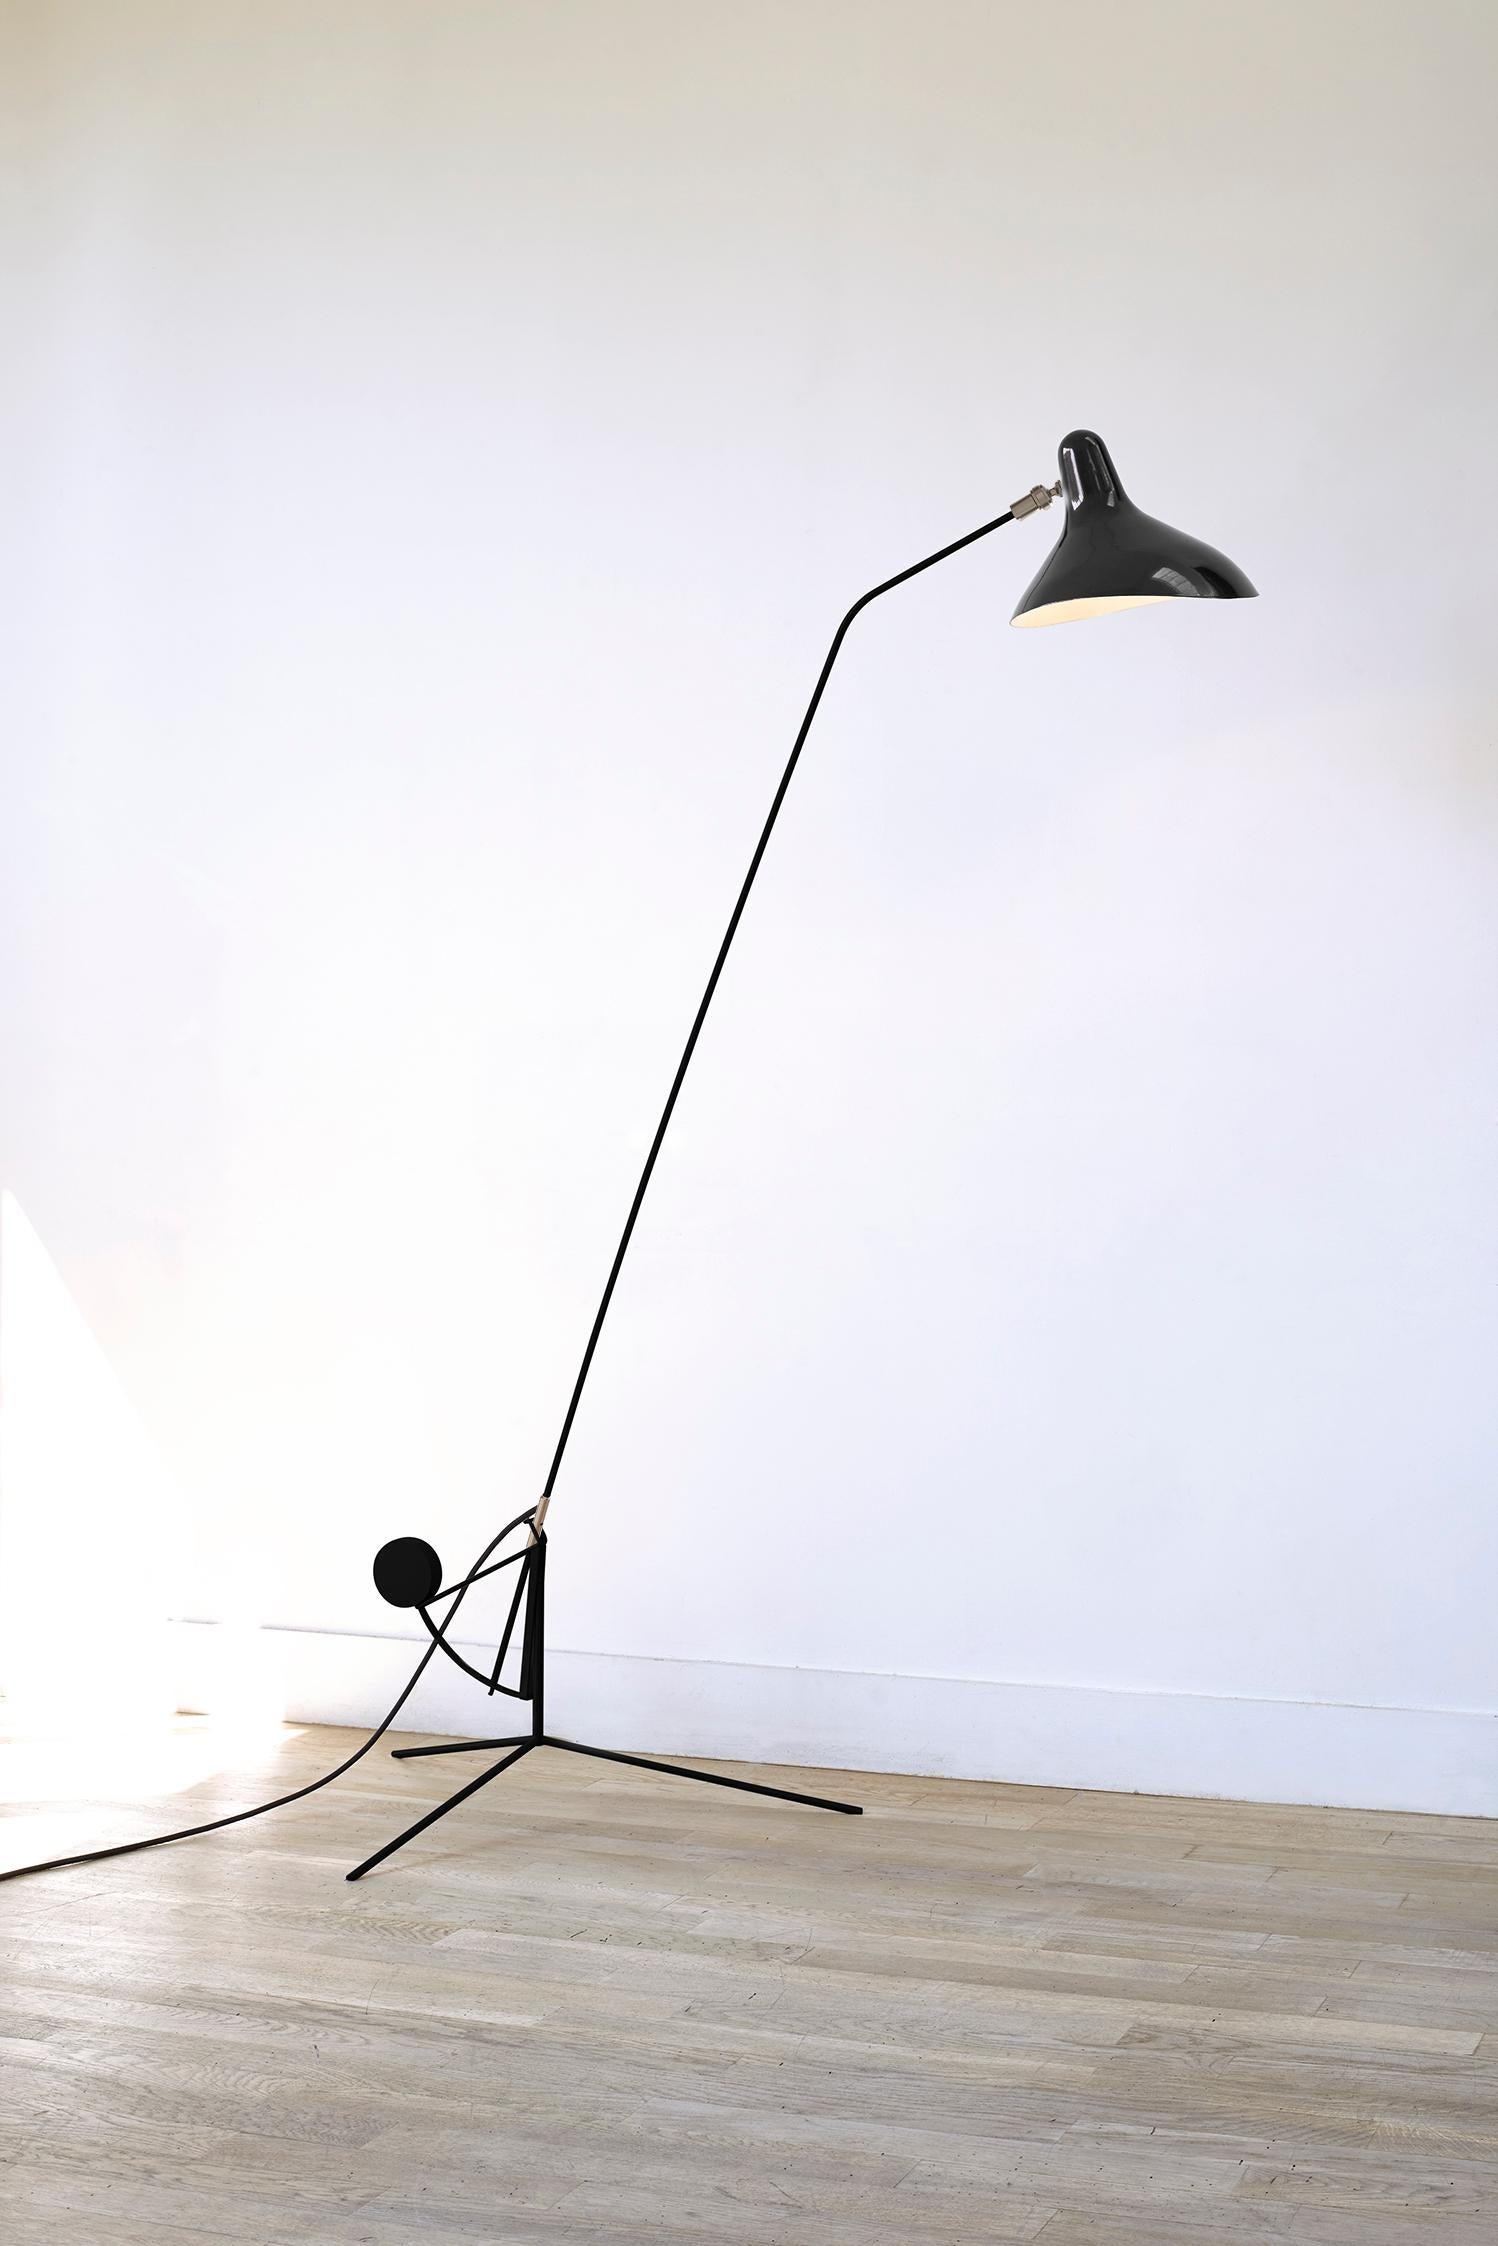 Mantis BS1 Large Floor Lamp by Bernard Schottlander
Dimensions : D 108 x L 74 x H 170 cm
MATERIAL : Acier, Aluminium

Toutes nos lampes peuvent être câblées en fonction de chaque pays. Si elle est vendue aux États-Unis, elle sera câblée pour les